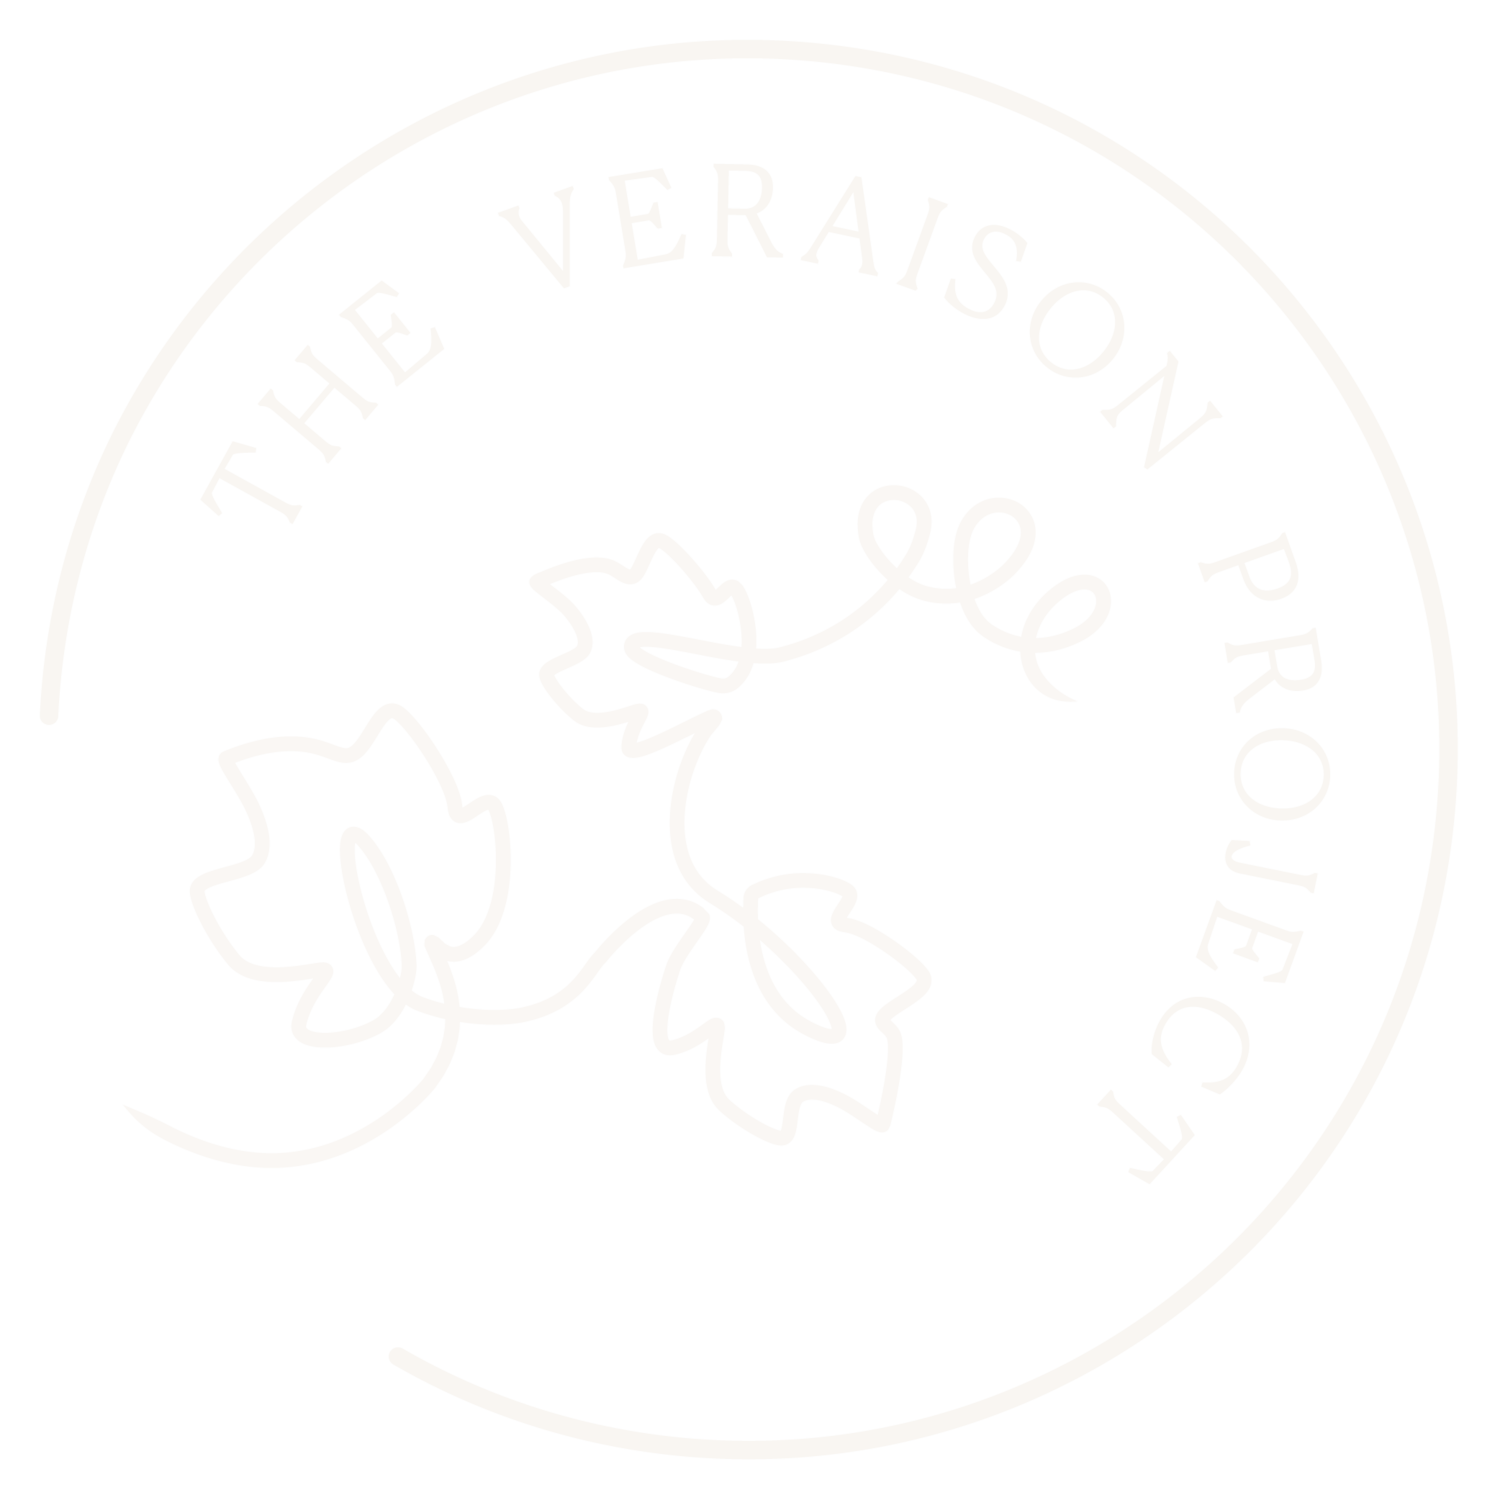 The Veraison Project